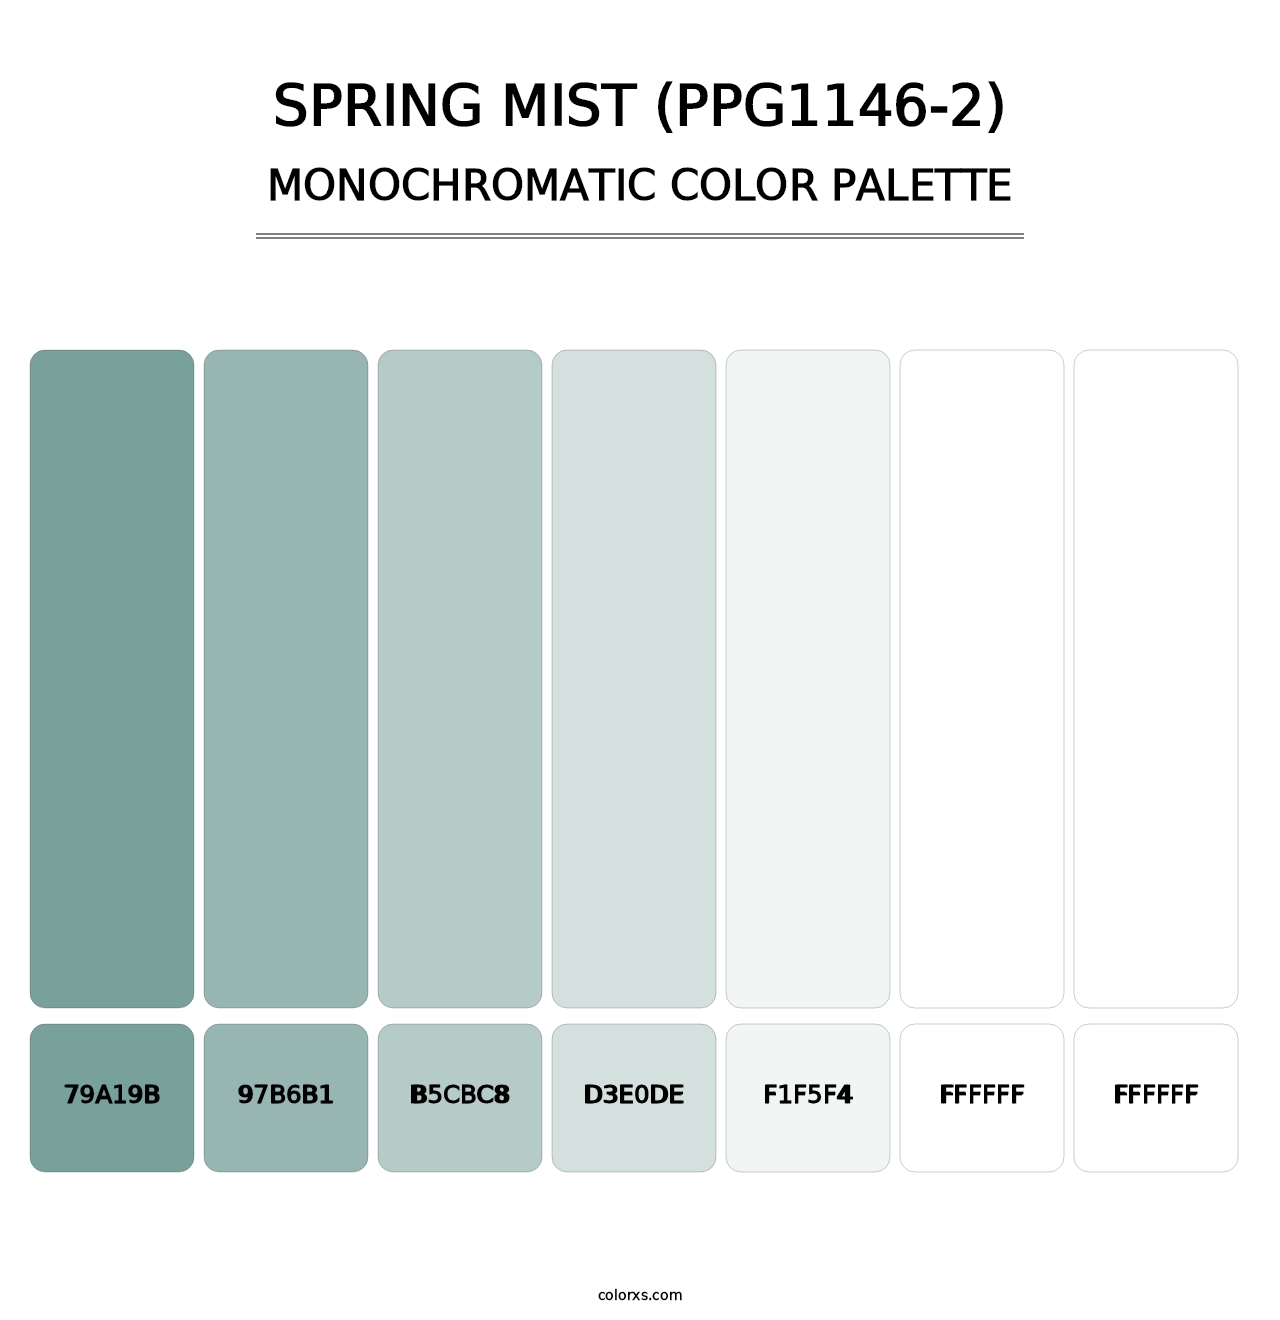 Spring Mist (PPG1146-2) - Monochromatic Color Palette